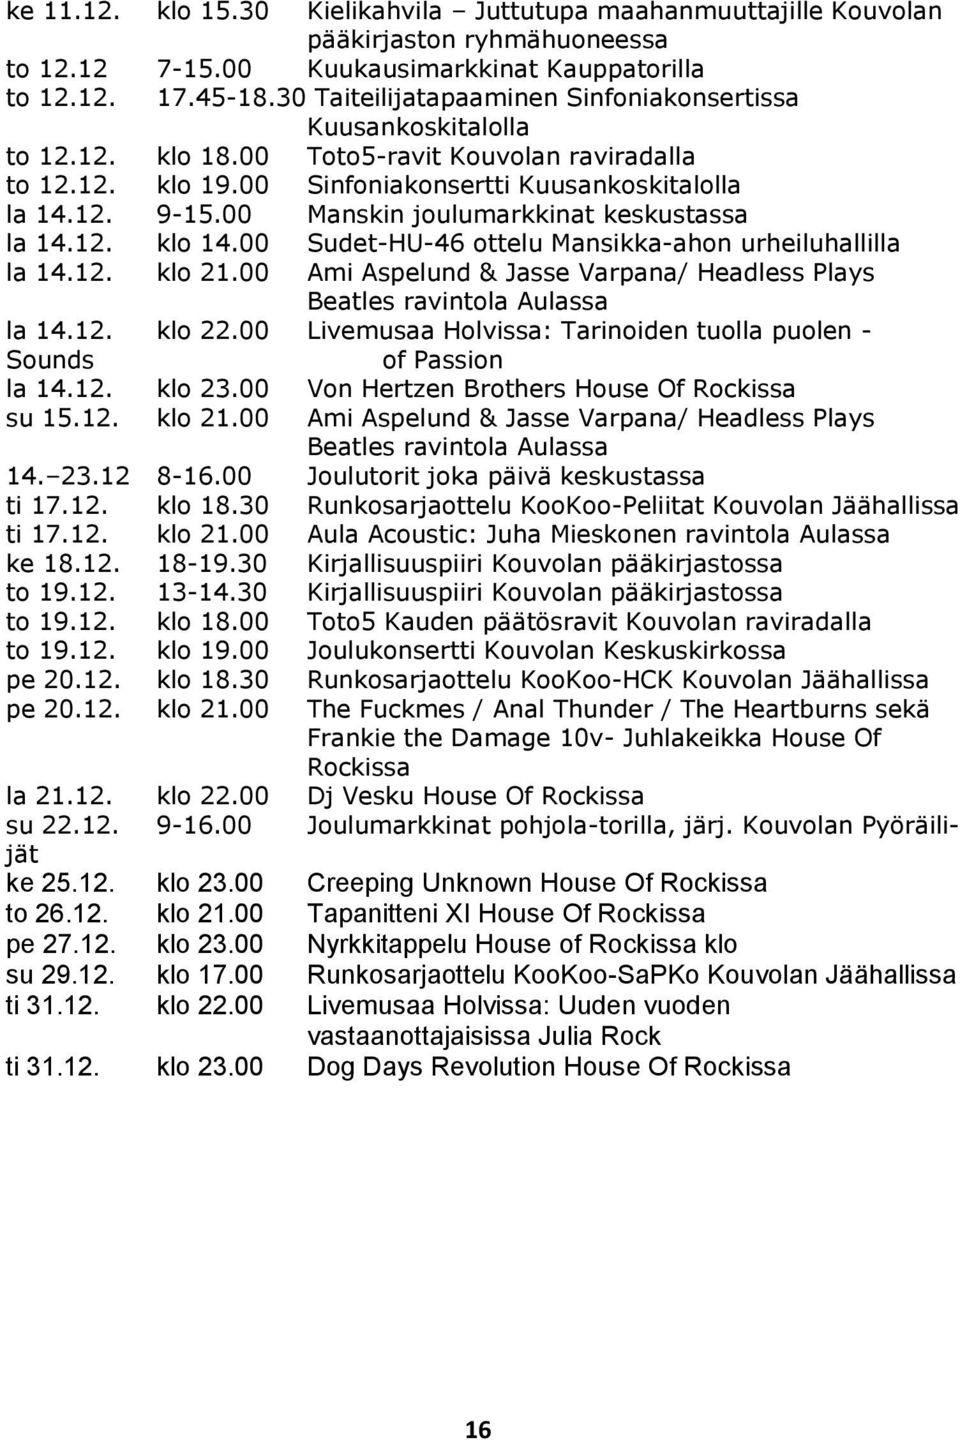 00 Manskin joulumarkkinat keskustassa la 14.12. klo 14.00 Sudet-HU-46 ottelu Mansikka-ahon urheiluhallilla la 14.12. klo 21.